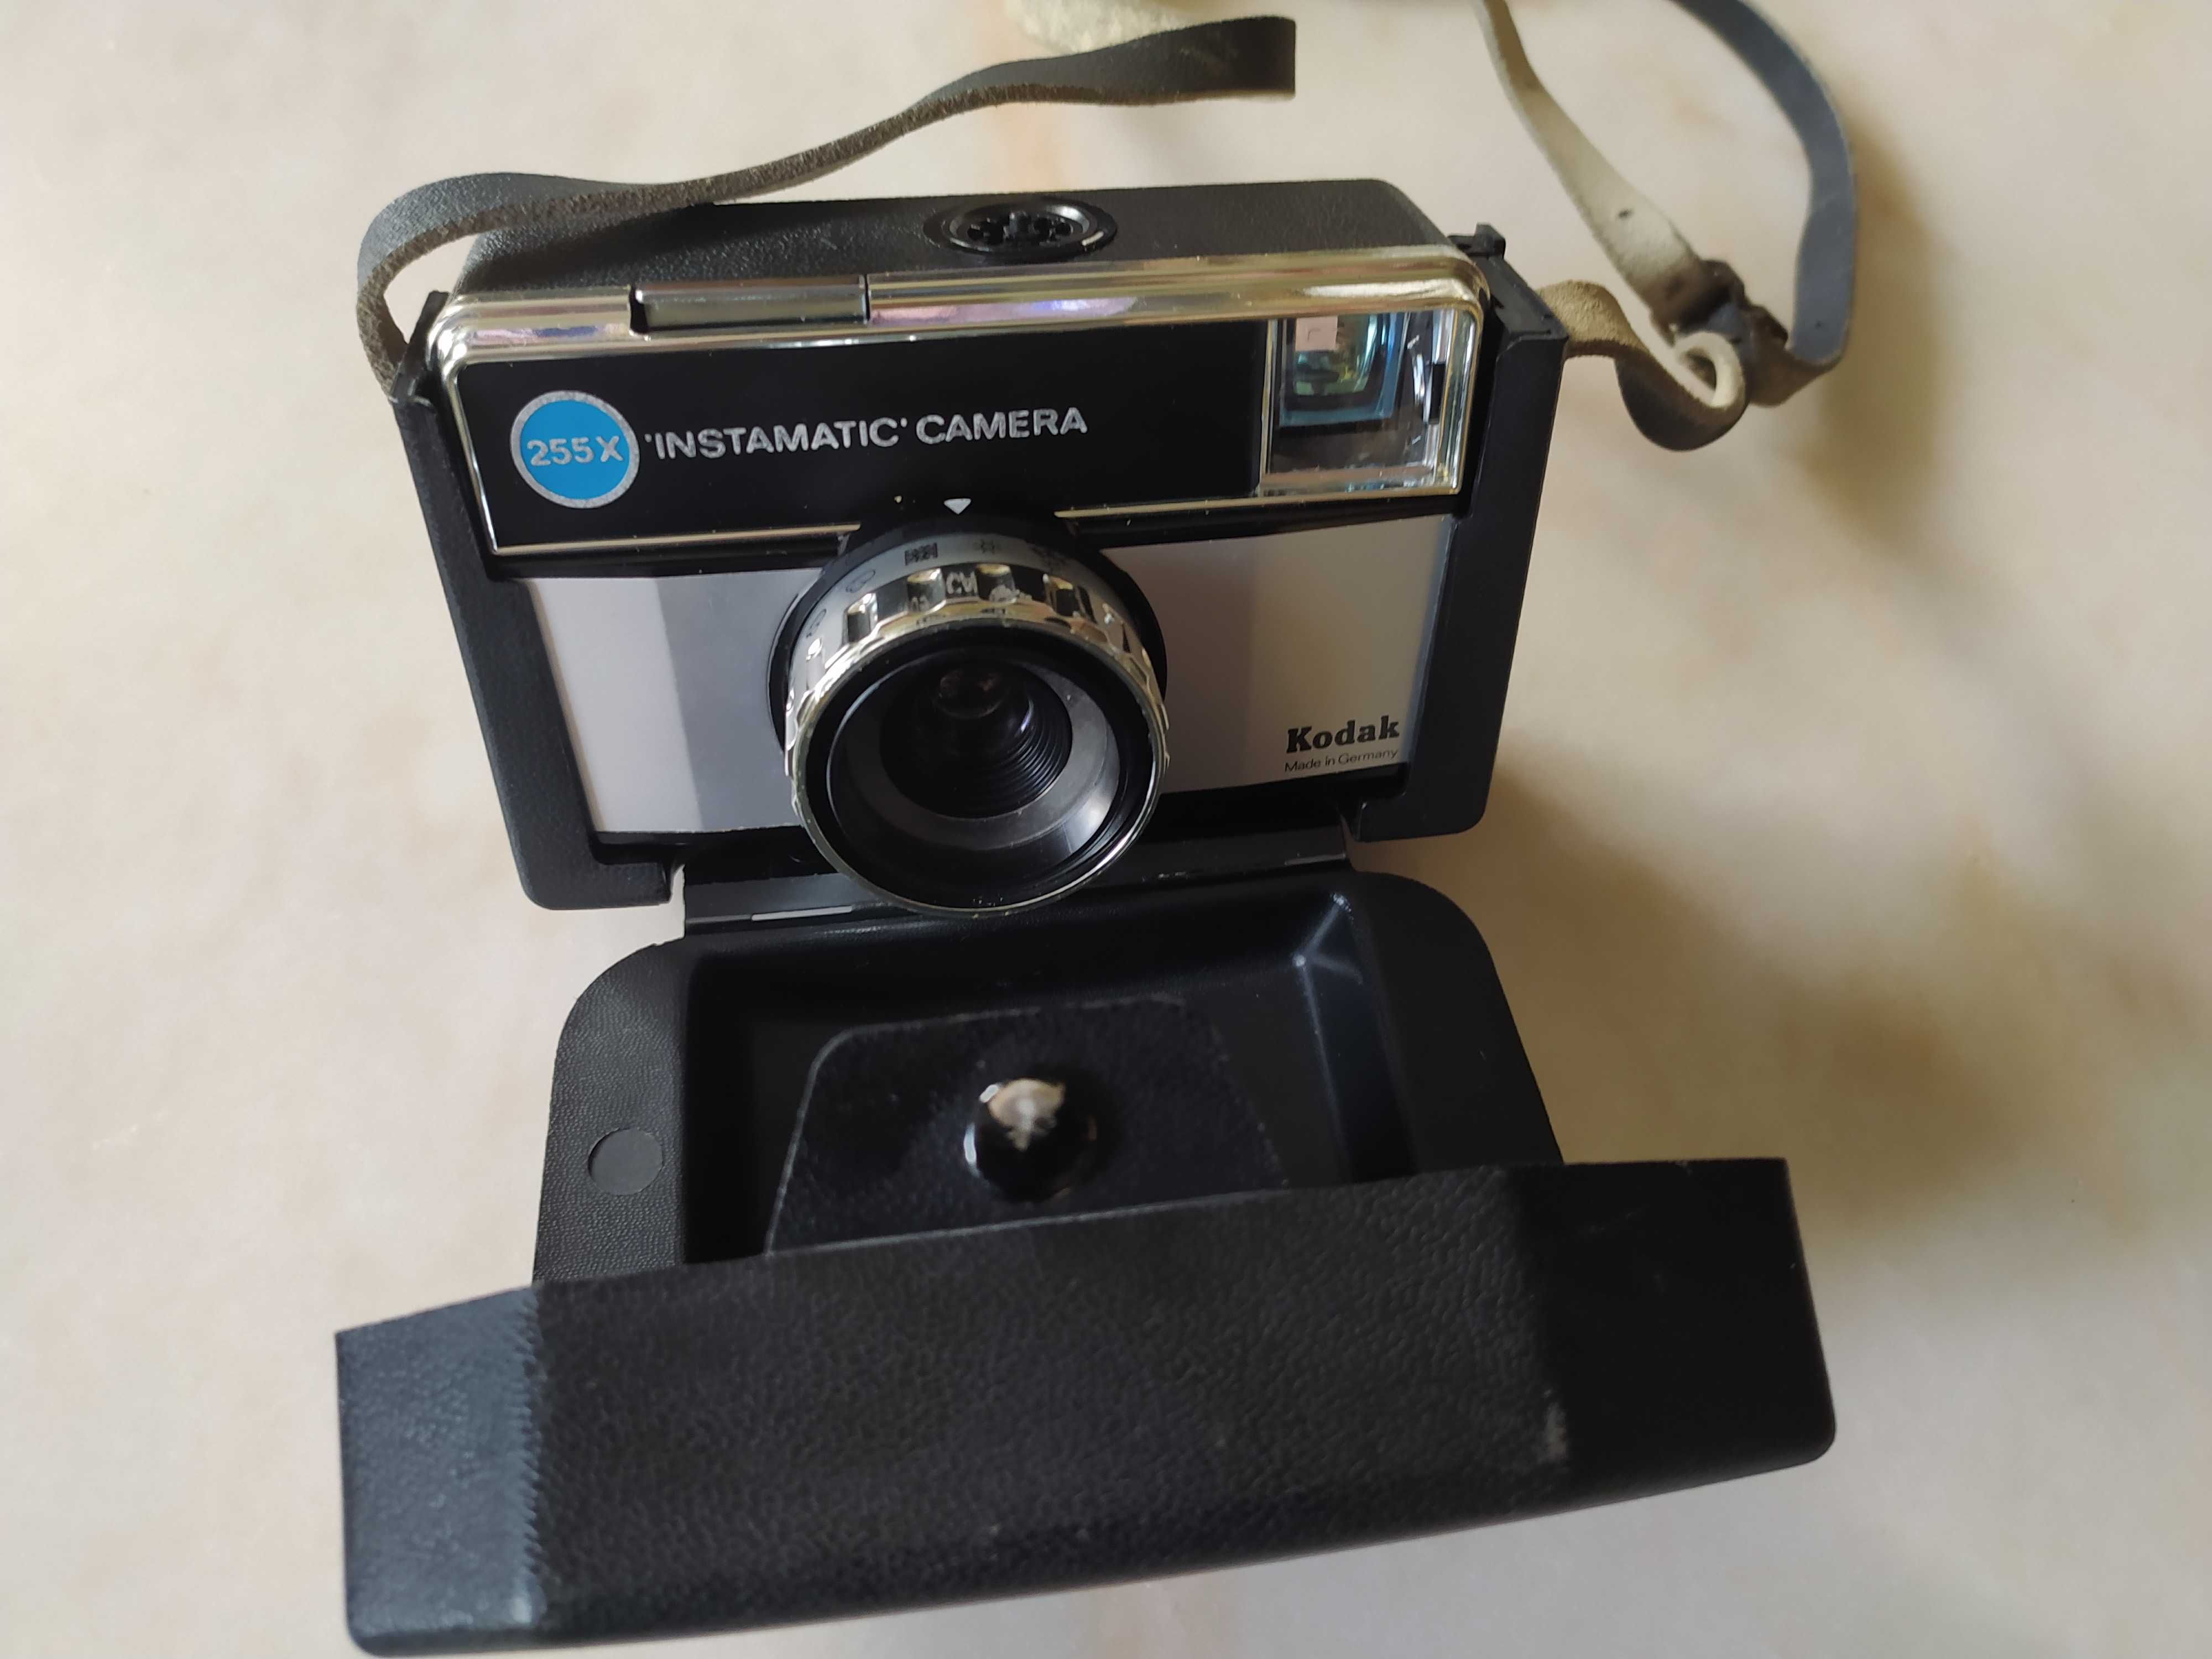 Aparat Kodak 255X Instamatic Camera